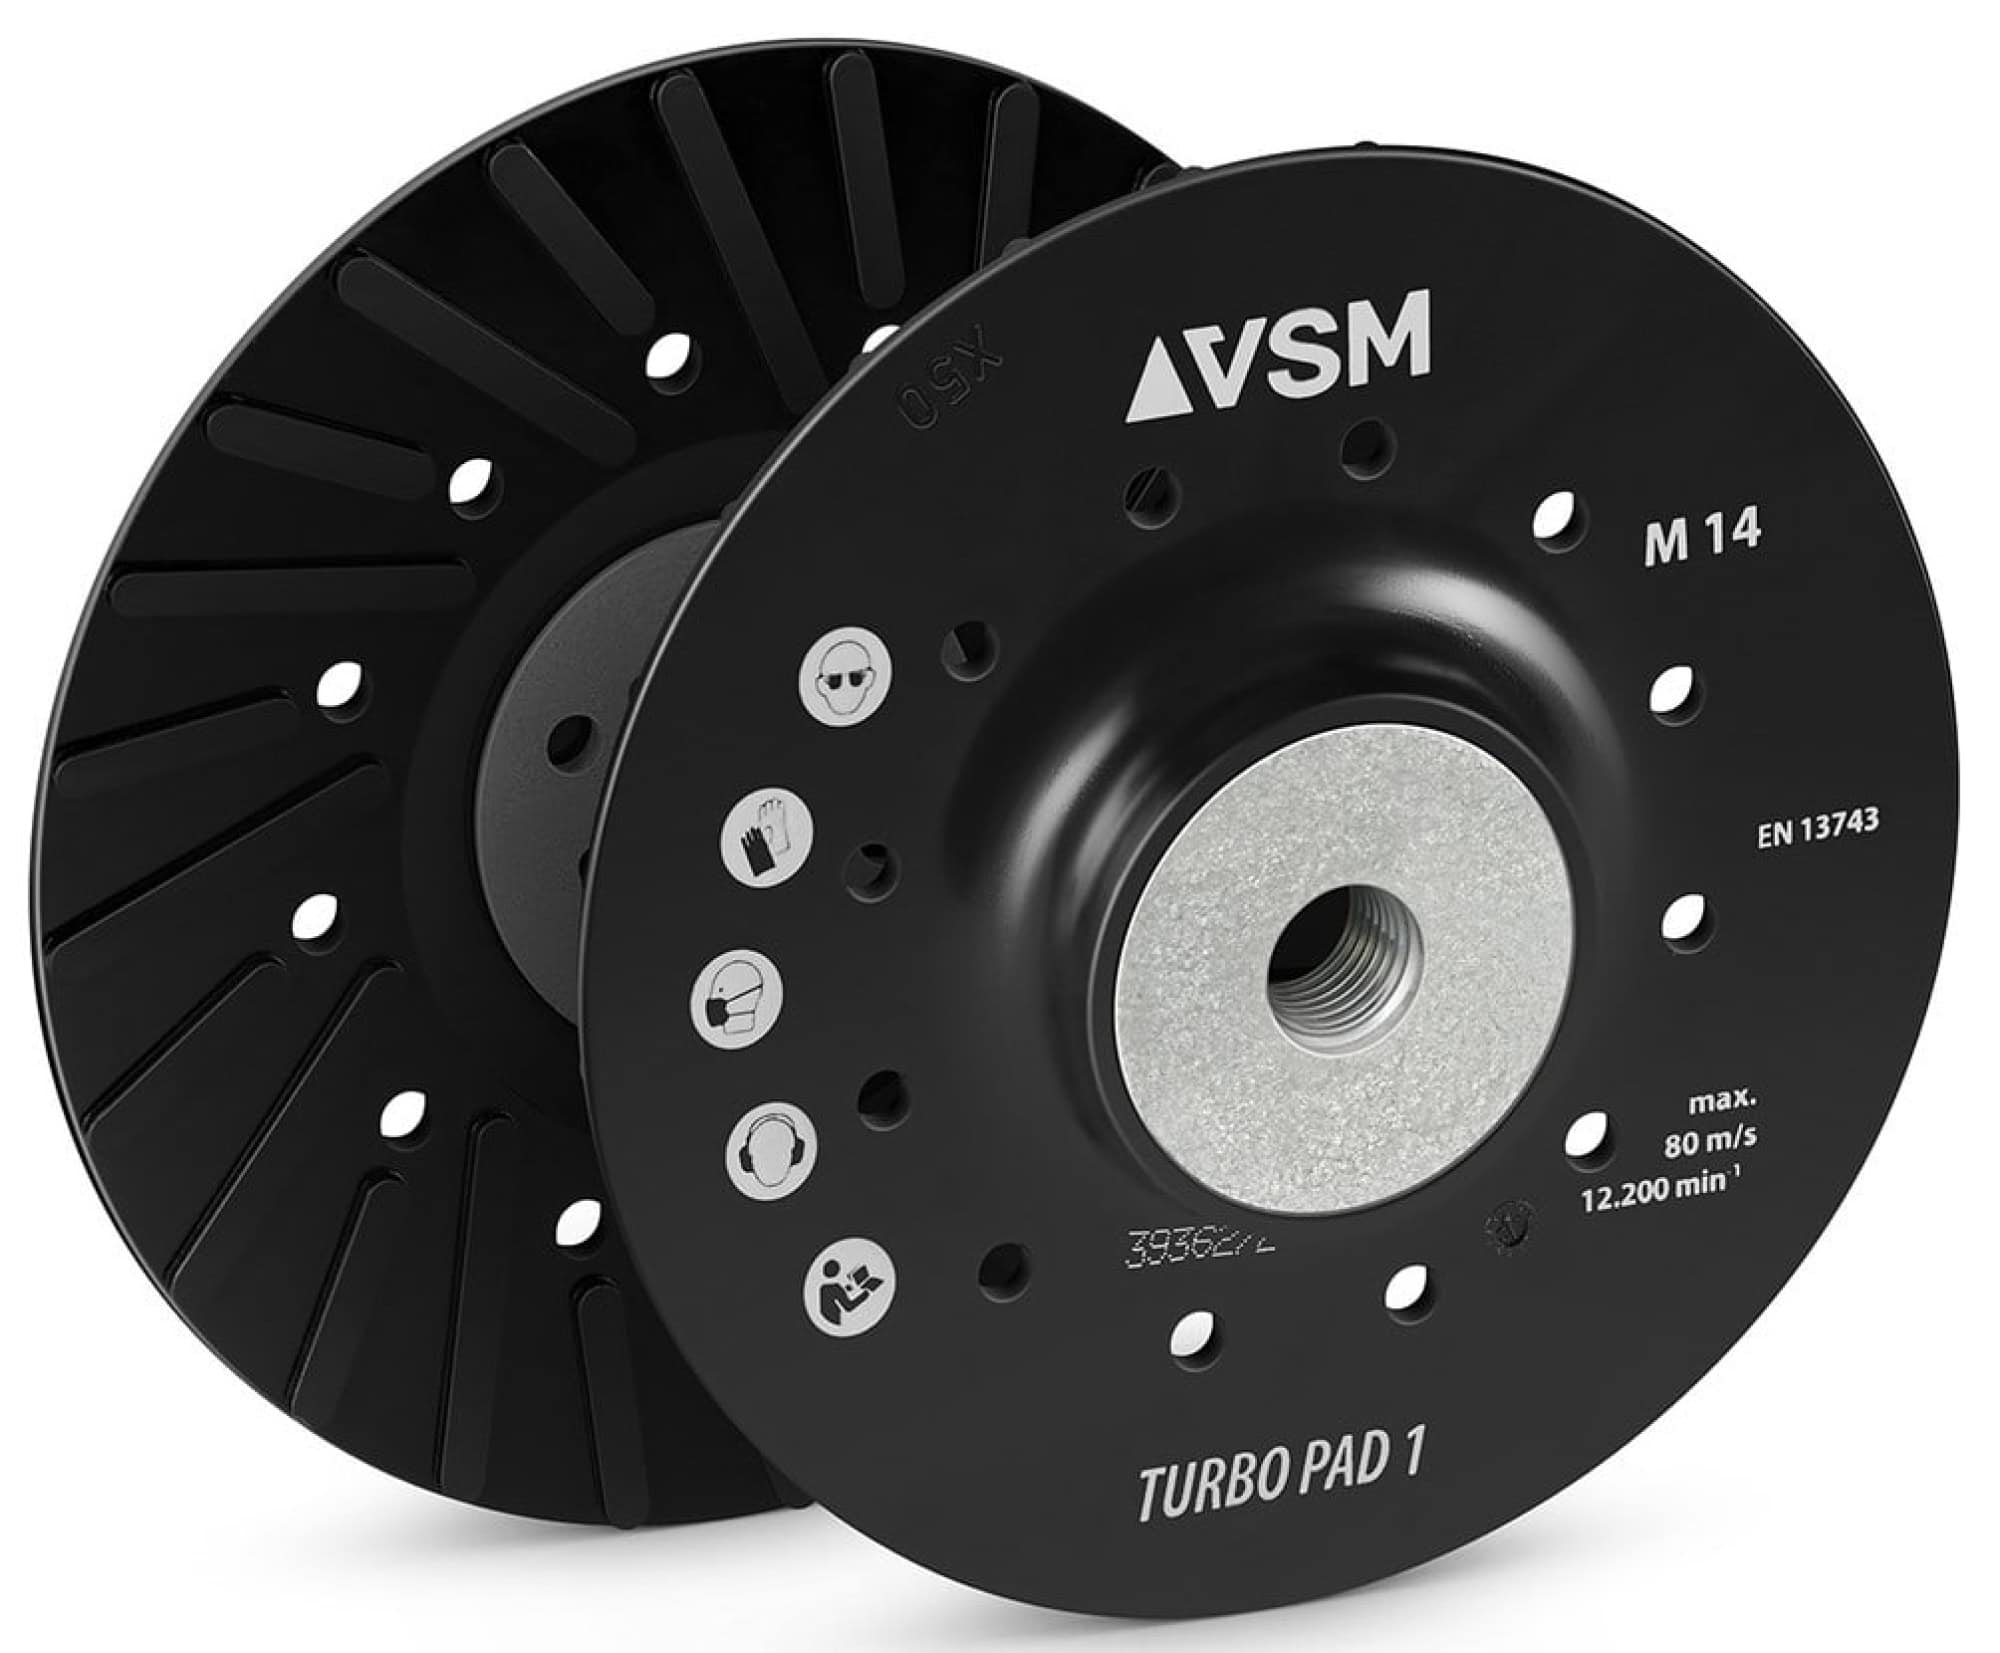 VSM TURBO PAD 1 731306, Ø 180 mm, M14 Gewinde, Schwarz, Hart, Stützteller mit Kühlrippen für Fiberscheibenscheiben mit Ø 22 mm Zentrieransatz für den VSM Winkelschleifer